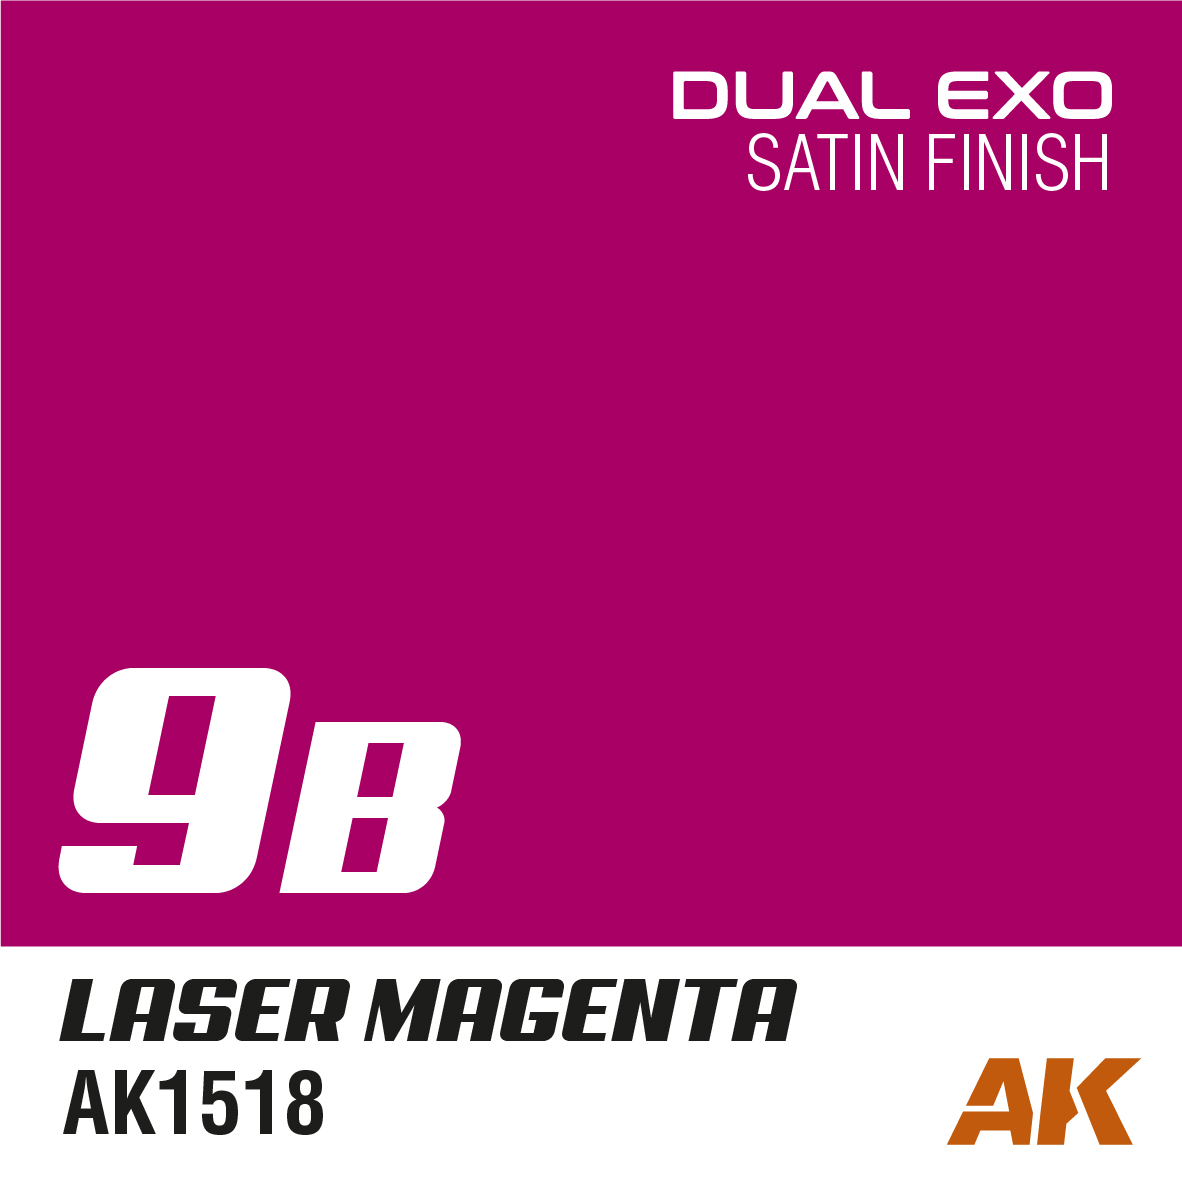 Dual Exo 9B - Laser Magenta